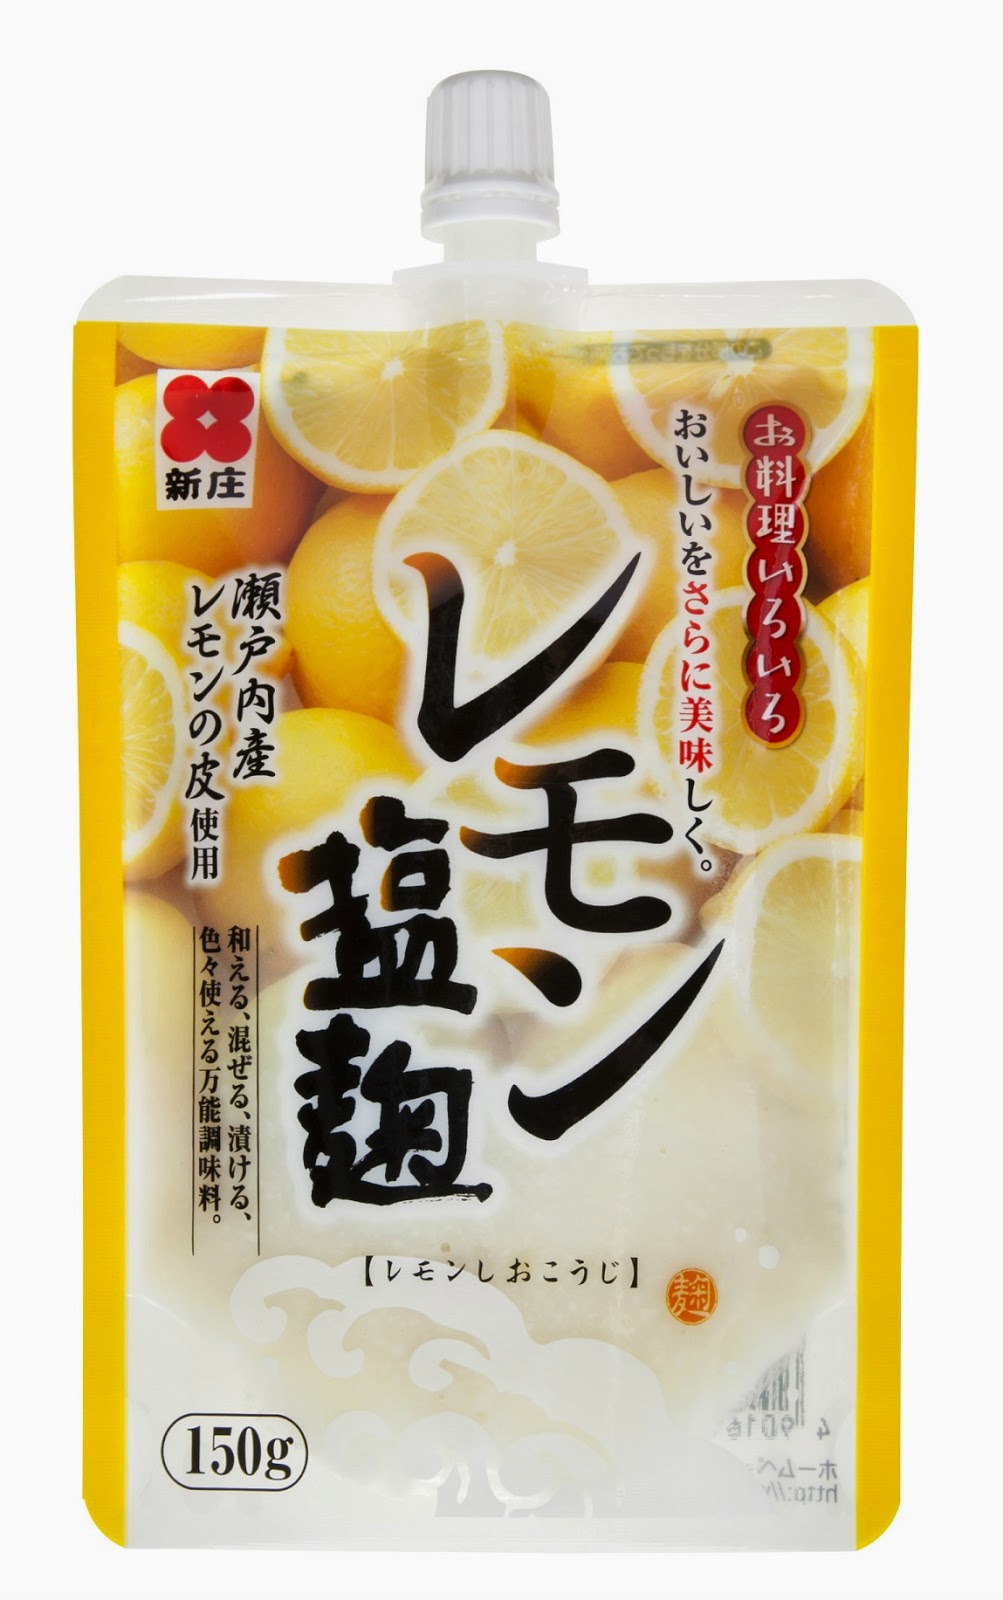 新庄みそ レモン塩麹 スパウトタイプ 150g 10個セット 瀬戸内産レモン